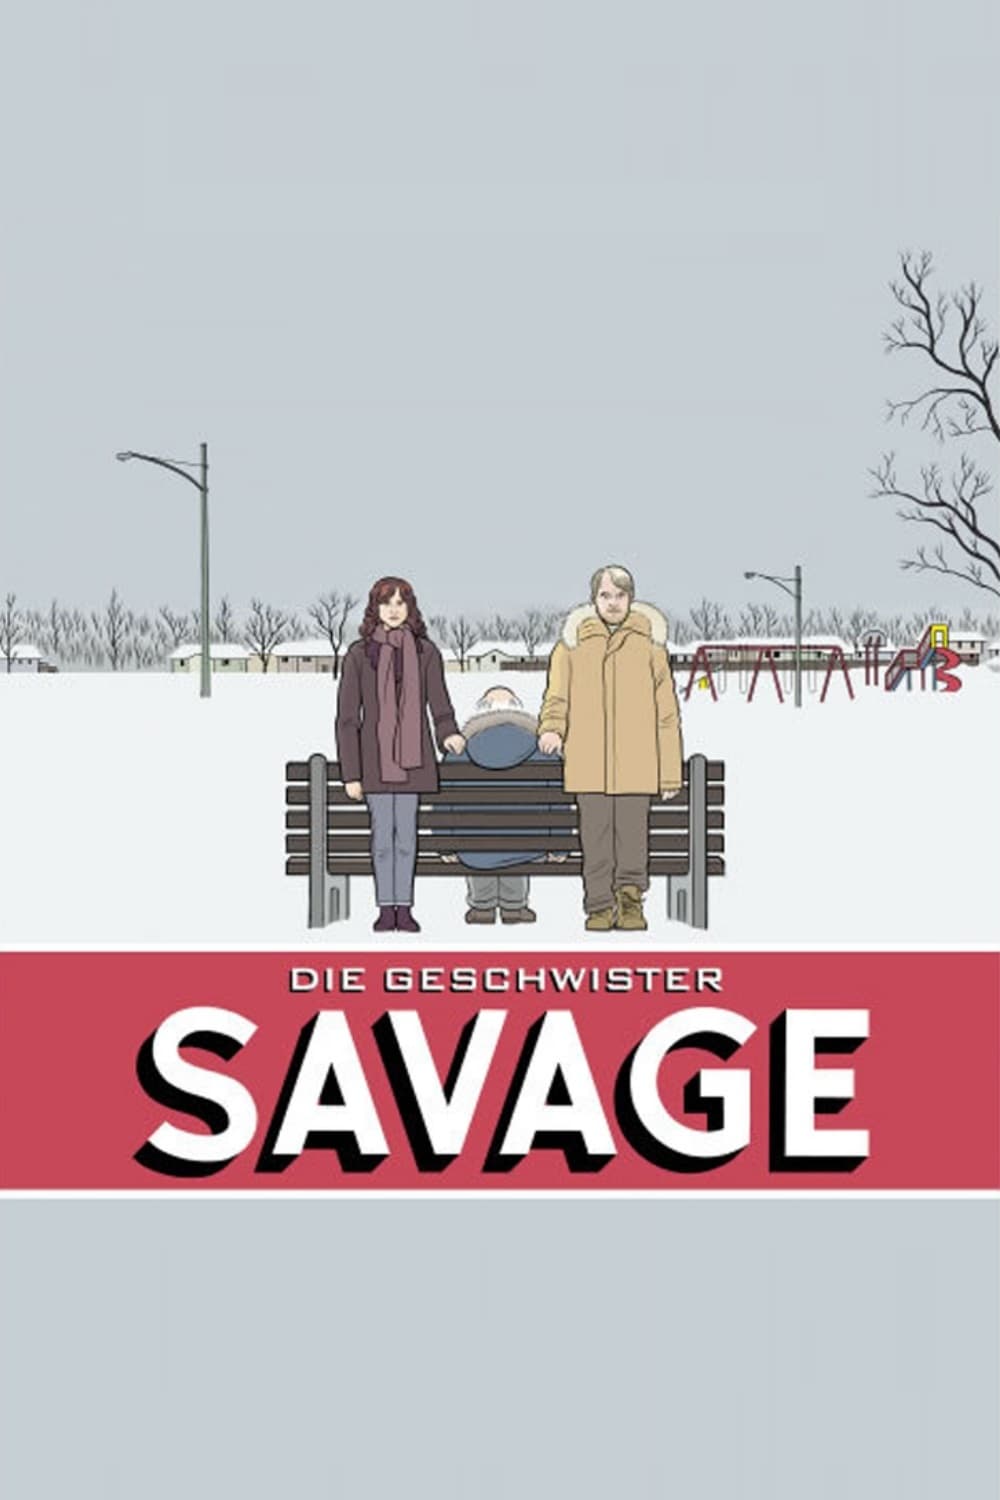 Plakat von "Die Geschwister Savage"